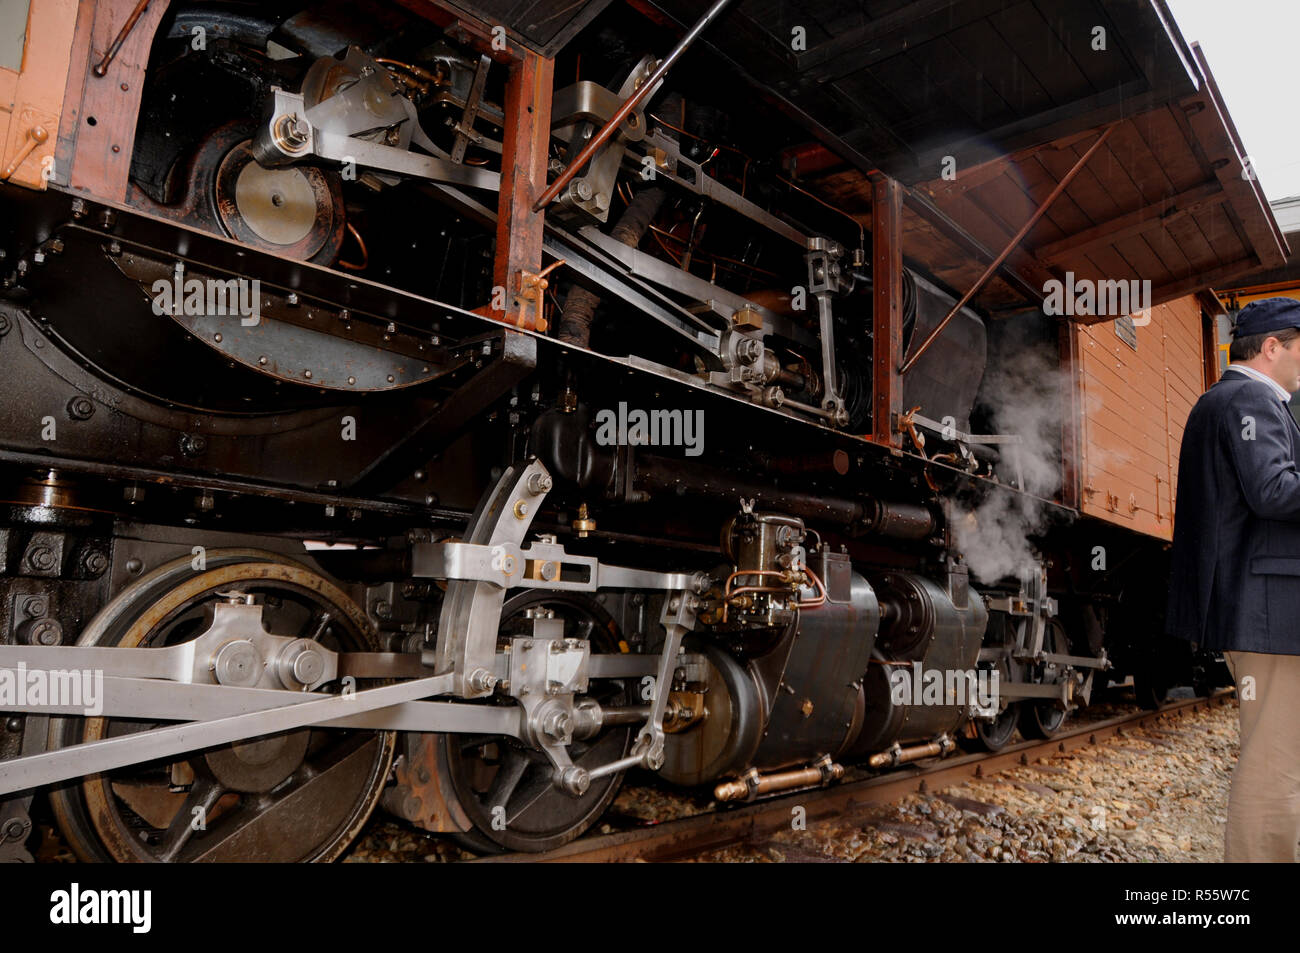 Switzerland: RhB historic steam locomotive in canton Graubünden Stock Photo  - Alamy